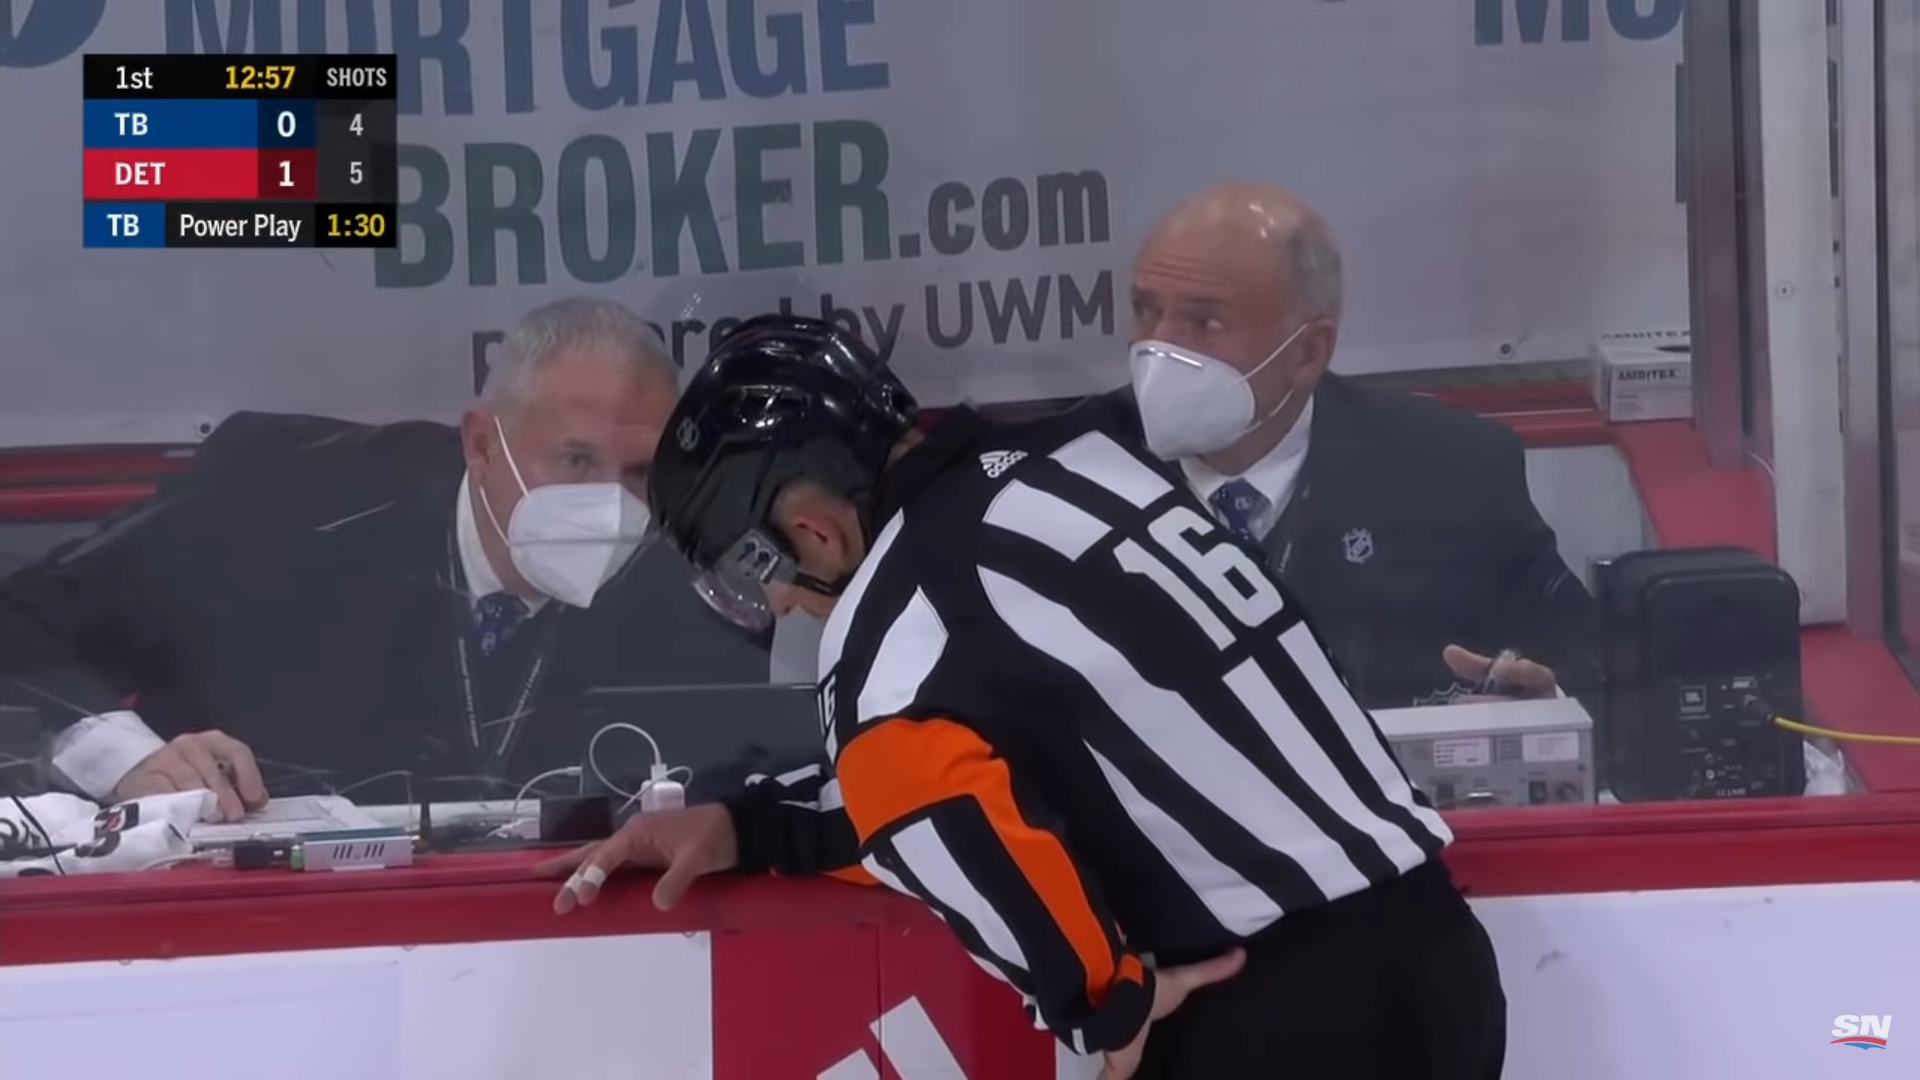 referee checks on broken horn